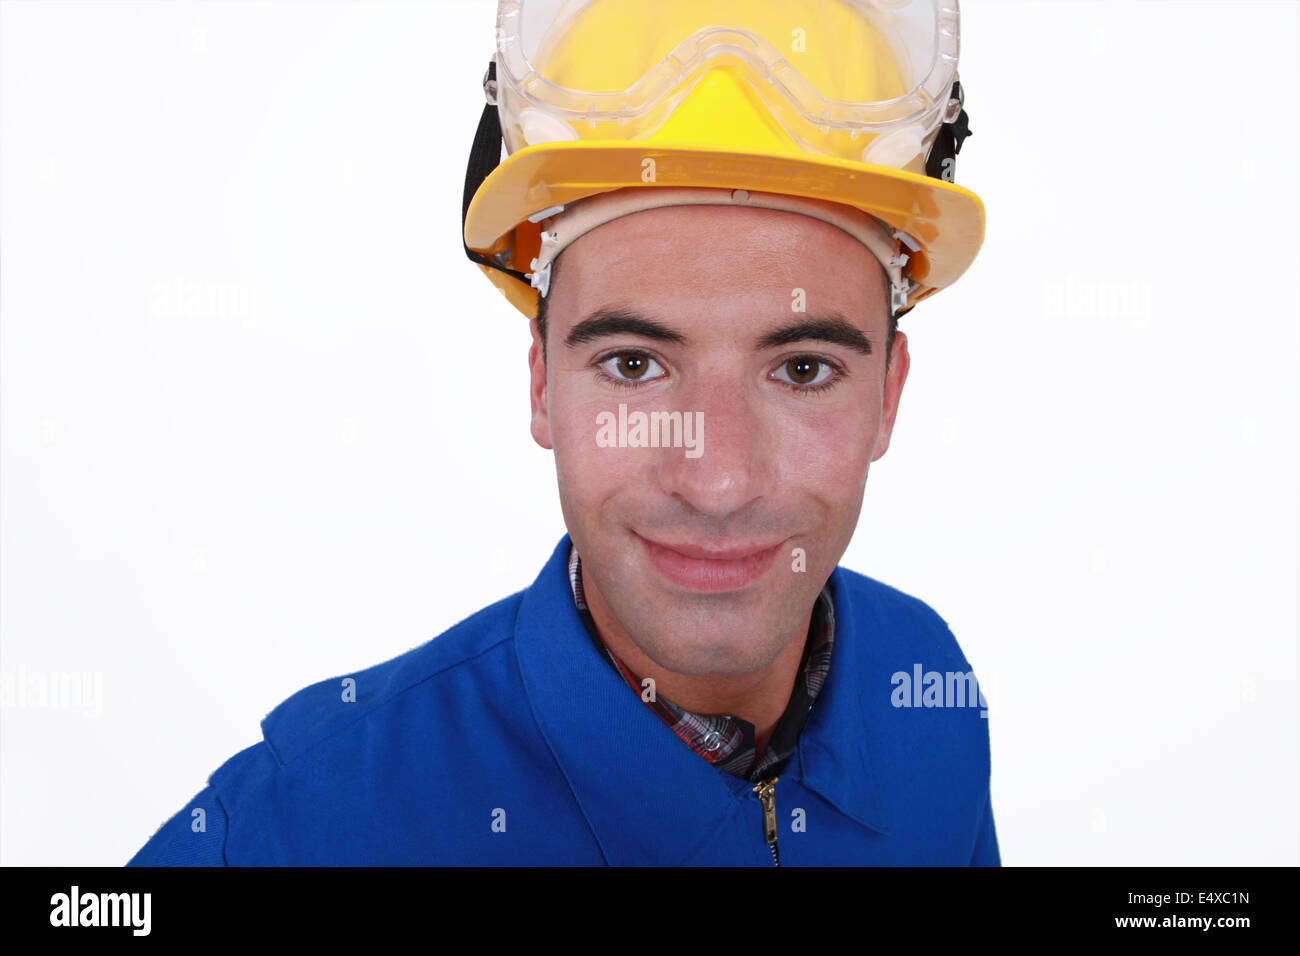 Handwerker, gekleidet für den job Stockfoto